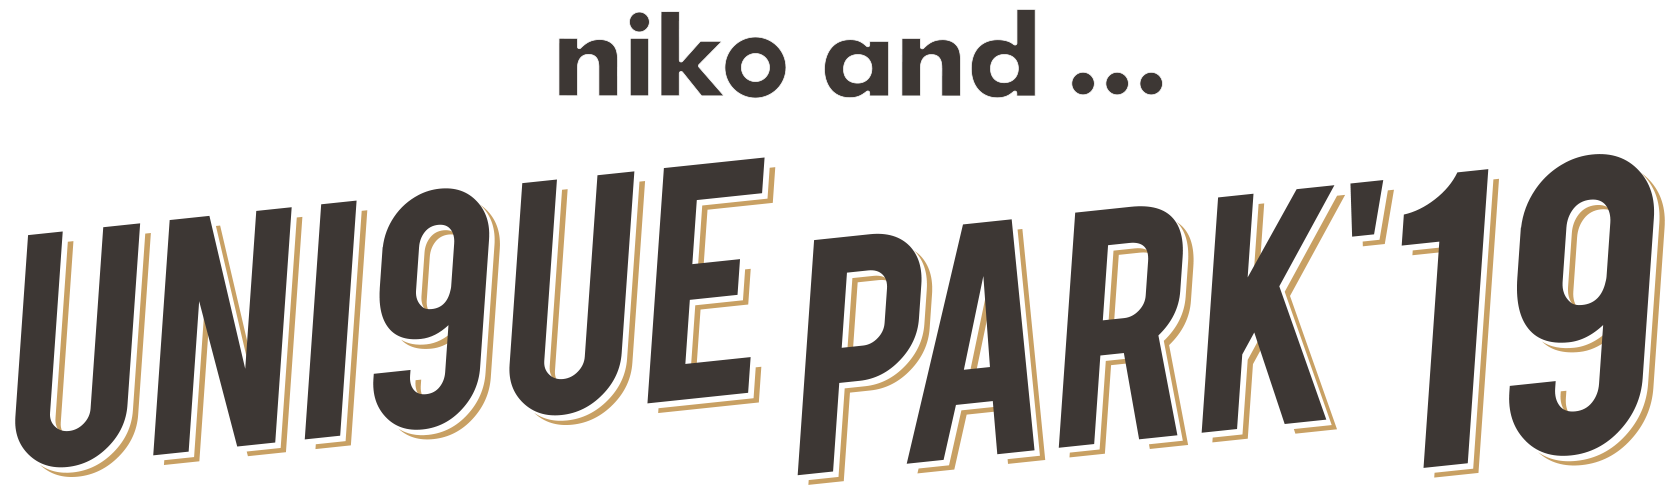 niko and ...UNI9UE PARK’19